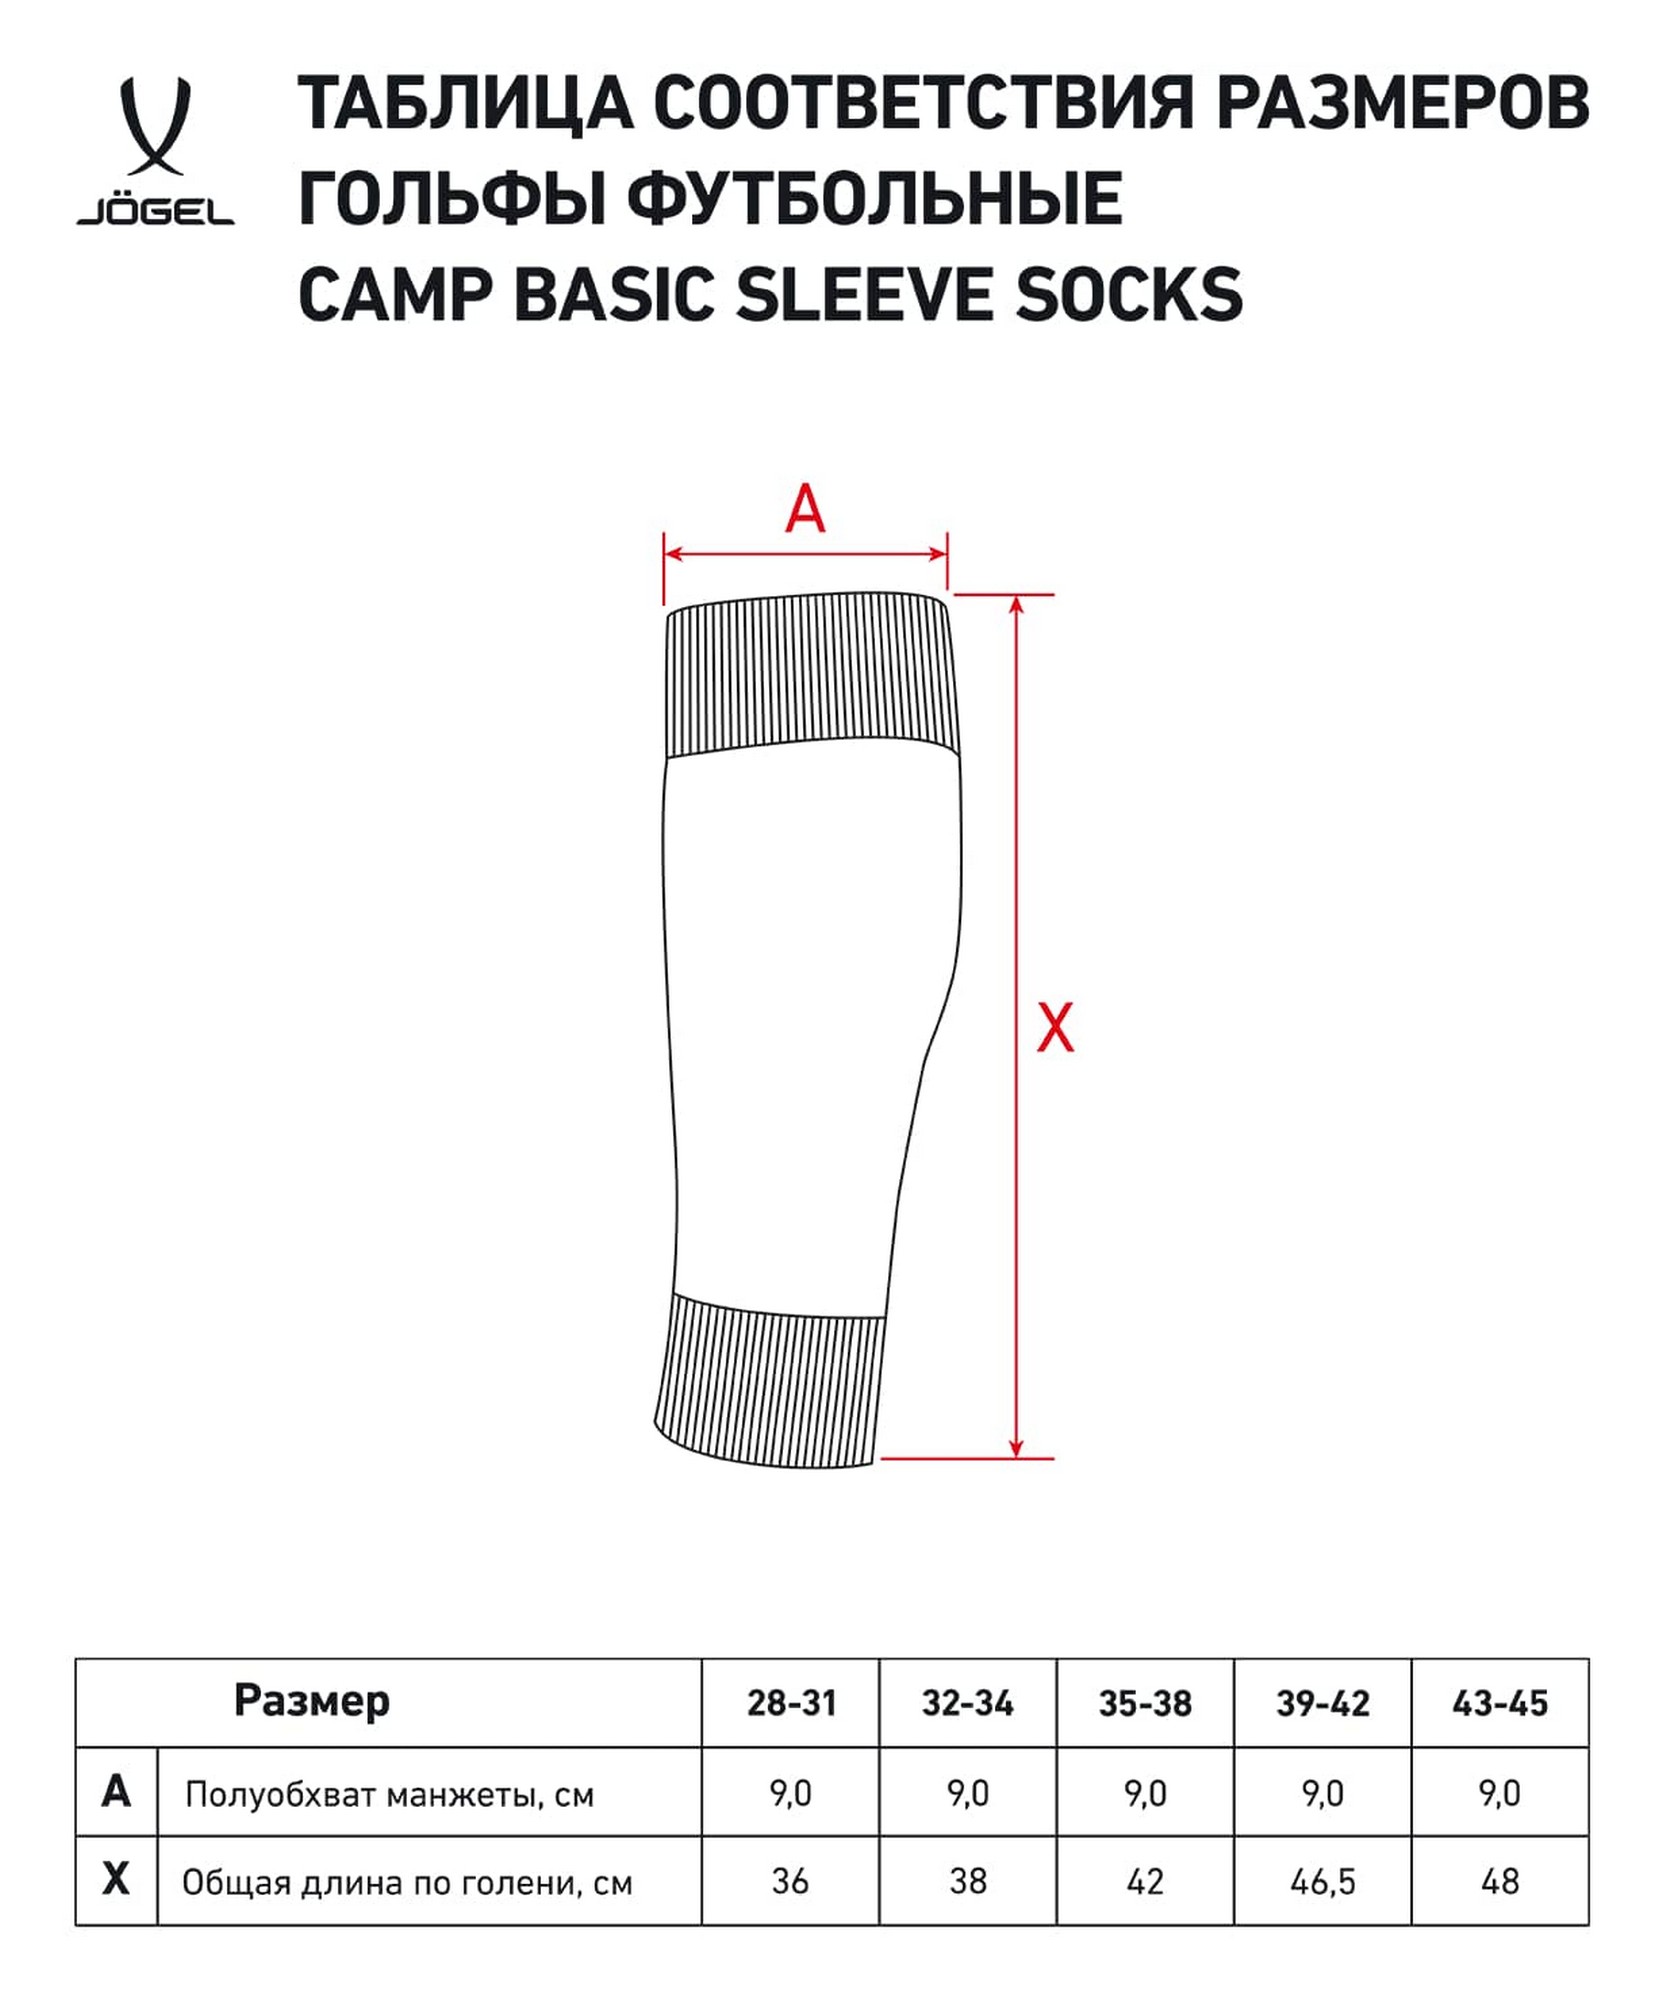 Гольфы футбольные Jogel Camp Basic Sleeve Socks желтый\белый 1663_2000